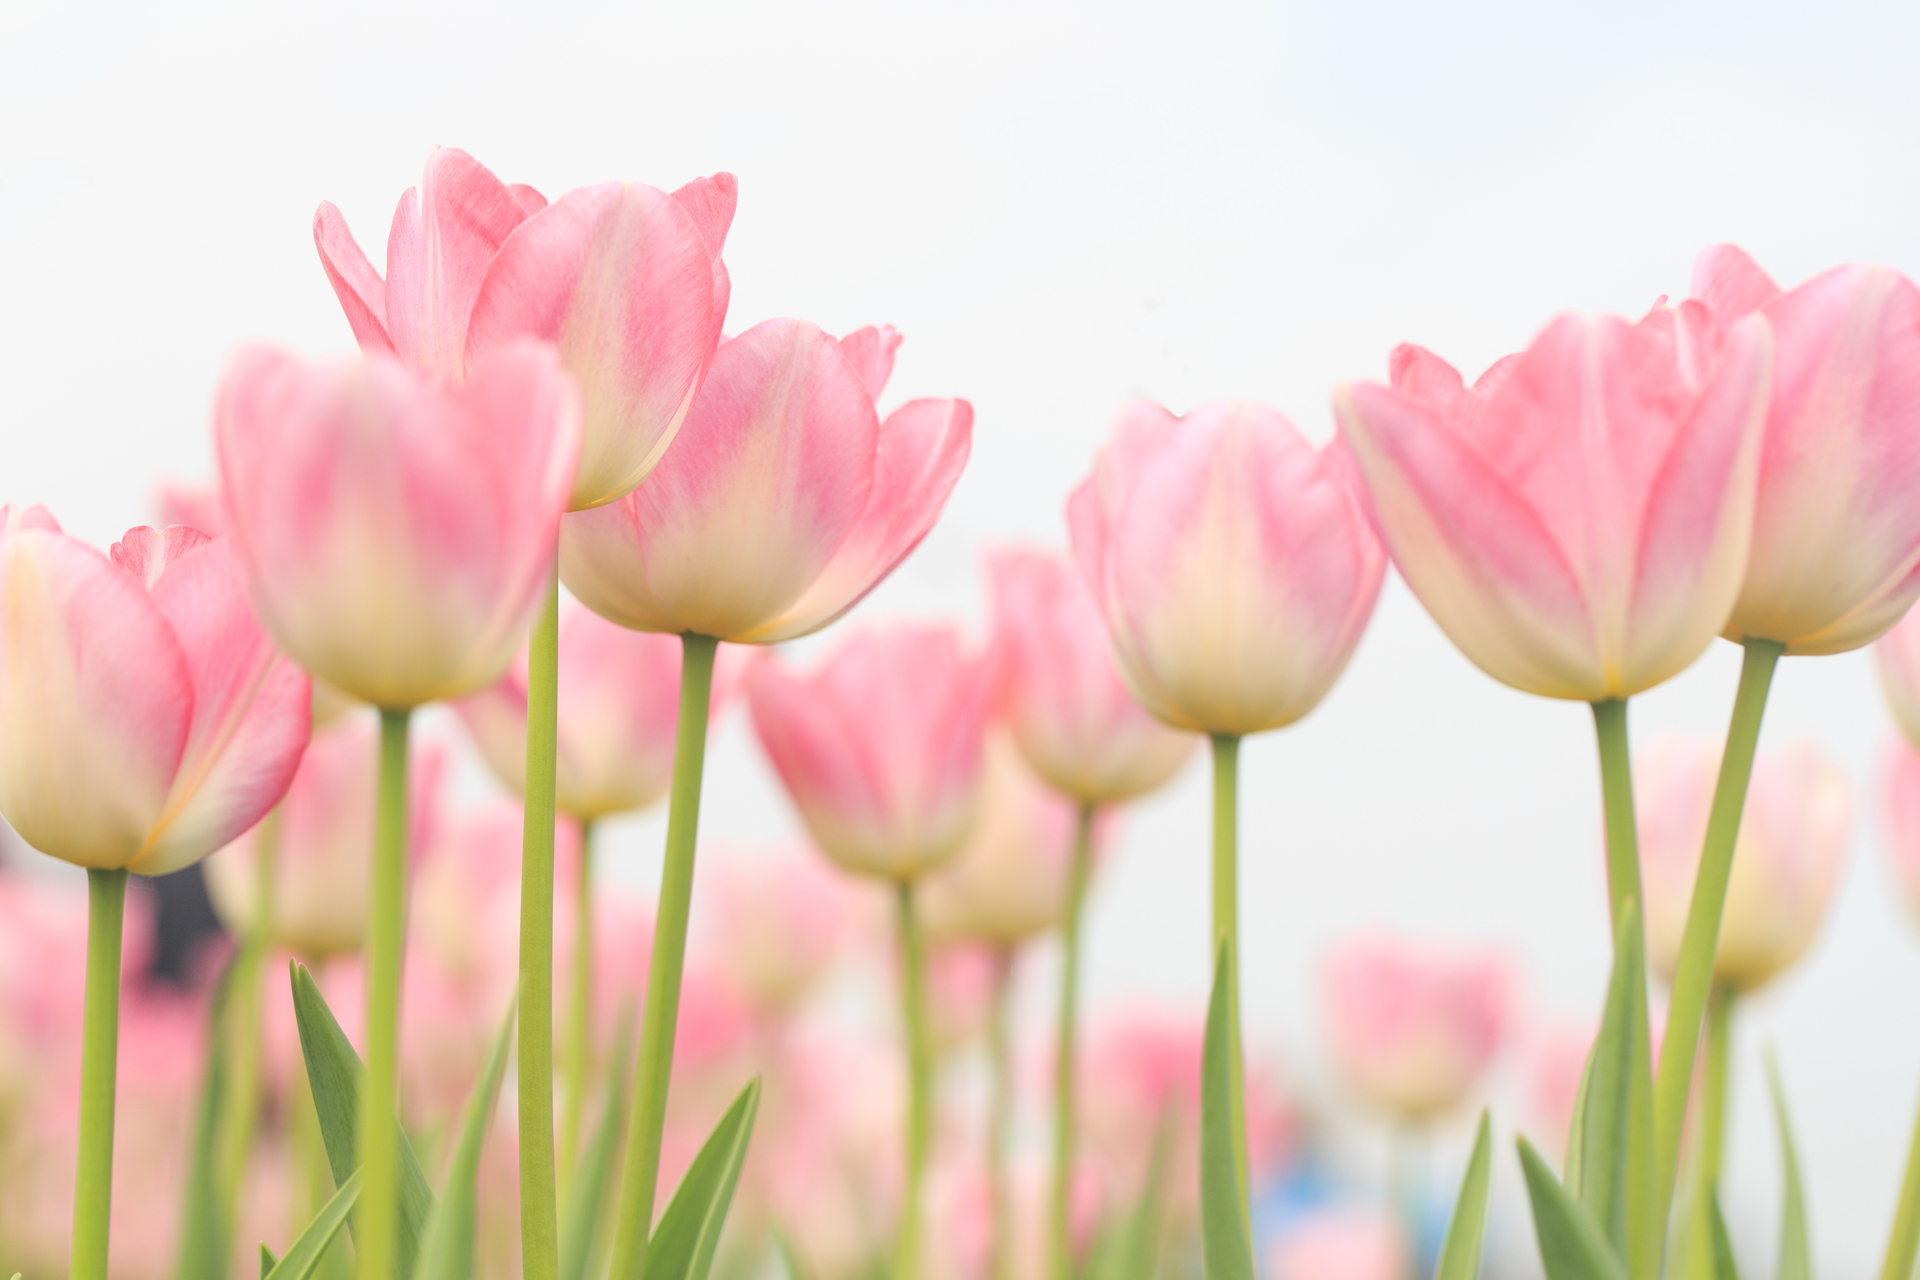 Na tym ujmującym obrazku możemy podziwiać piękno różowych tulipanów, które rozkwitają w pełnej okazałości. Ich delikatne płatki o intensywnym różowym kolorze emanują romantyzmem i świeżością. Kwiaty te tworzą piękne kompozycje, dodając przepychu i uroku do otaczającego krajobrazu